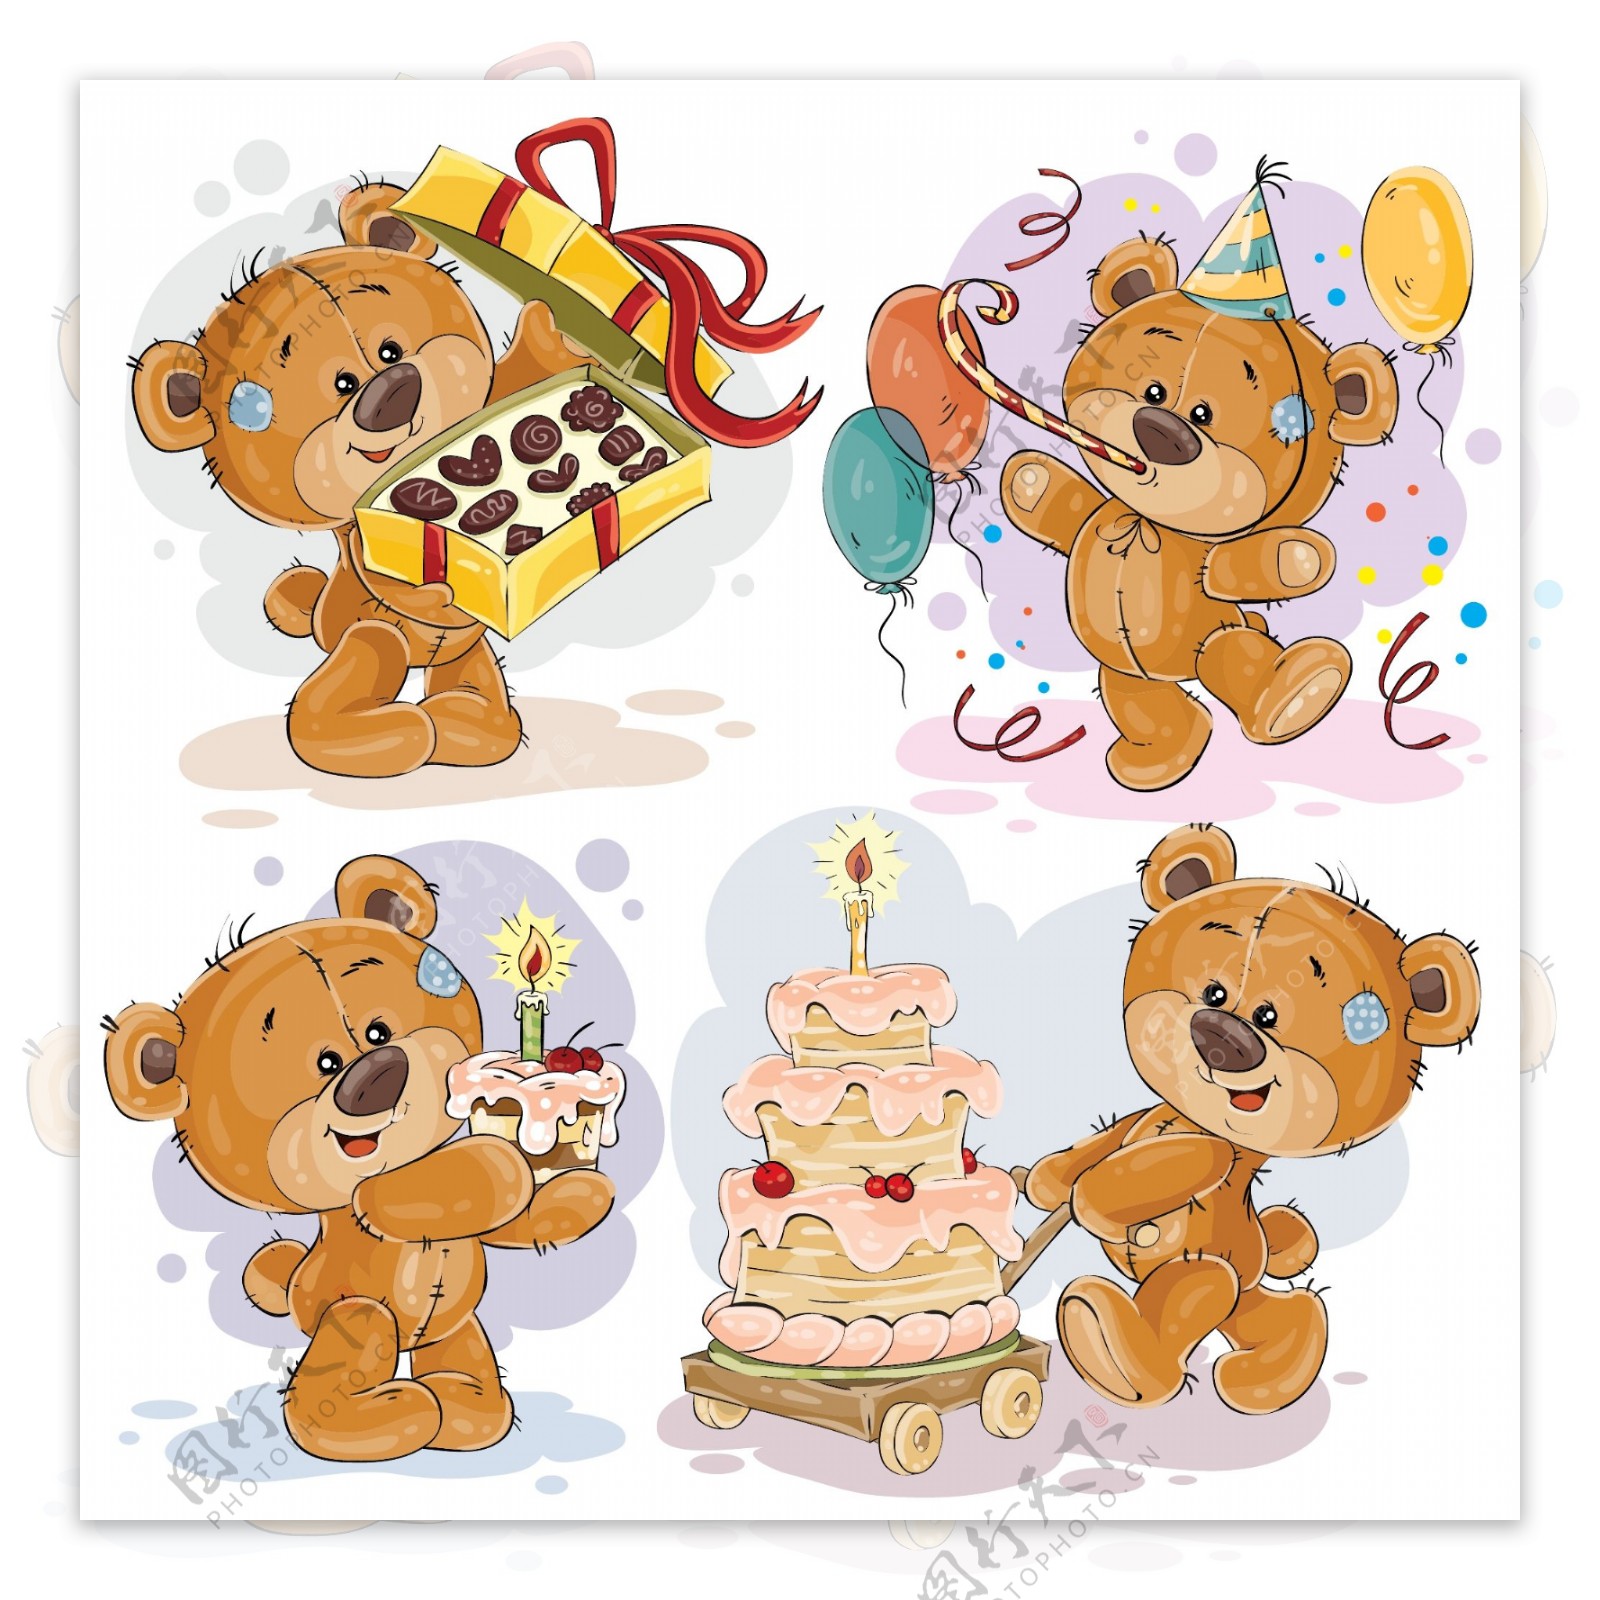 可爱的泰迪熊祝你生日快乐